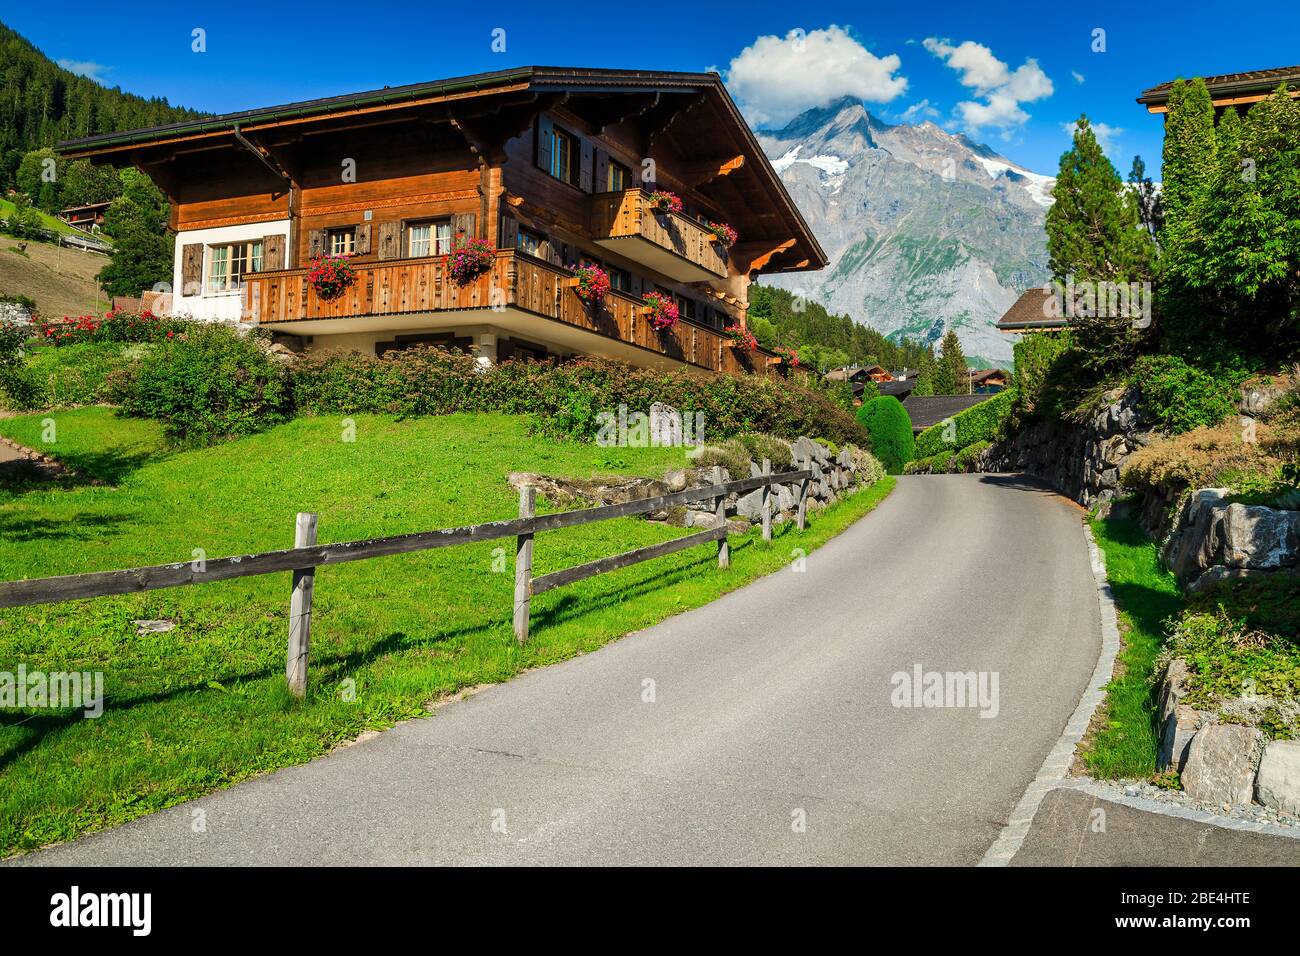 Gemütliche Straßenansicht mit Holzhütten und blumigen Ziergärten im Bergresort Grindelwald, Berner Oberland, Schweiz, Europa Stockfoto